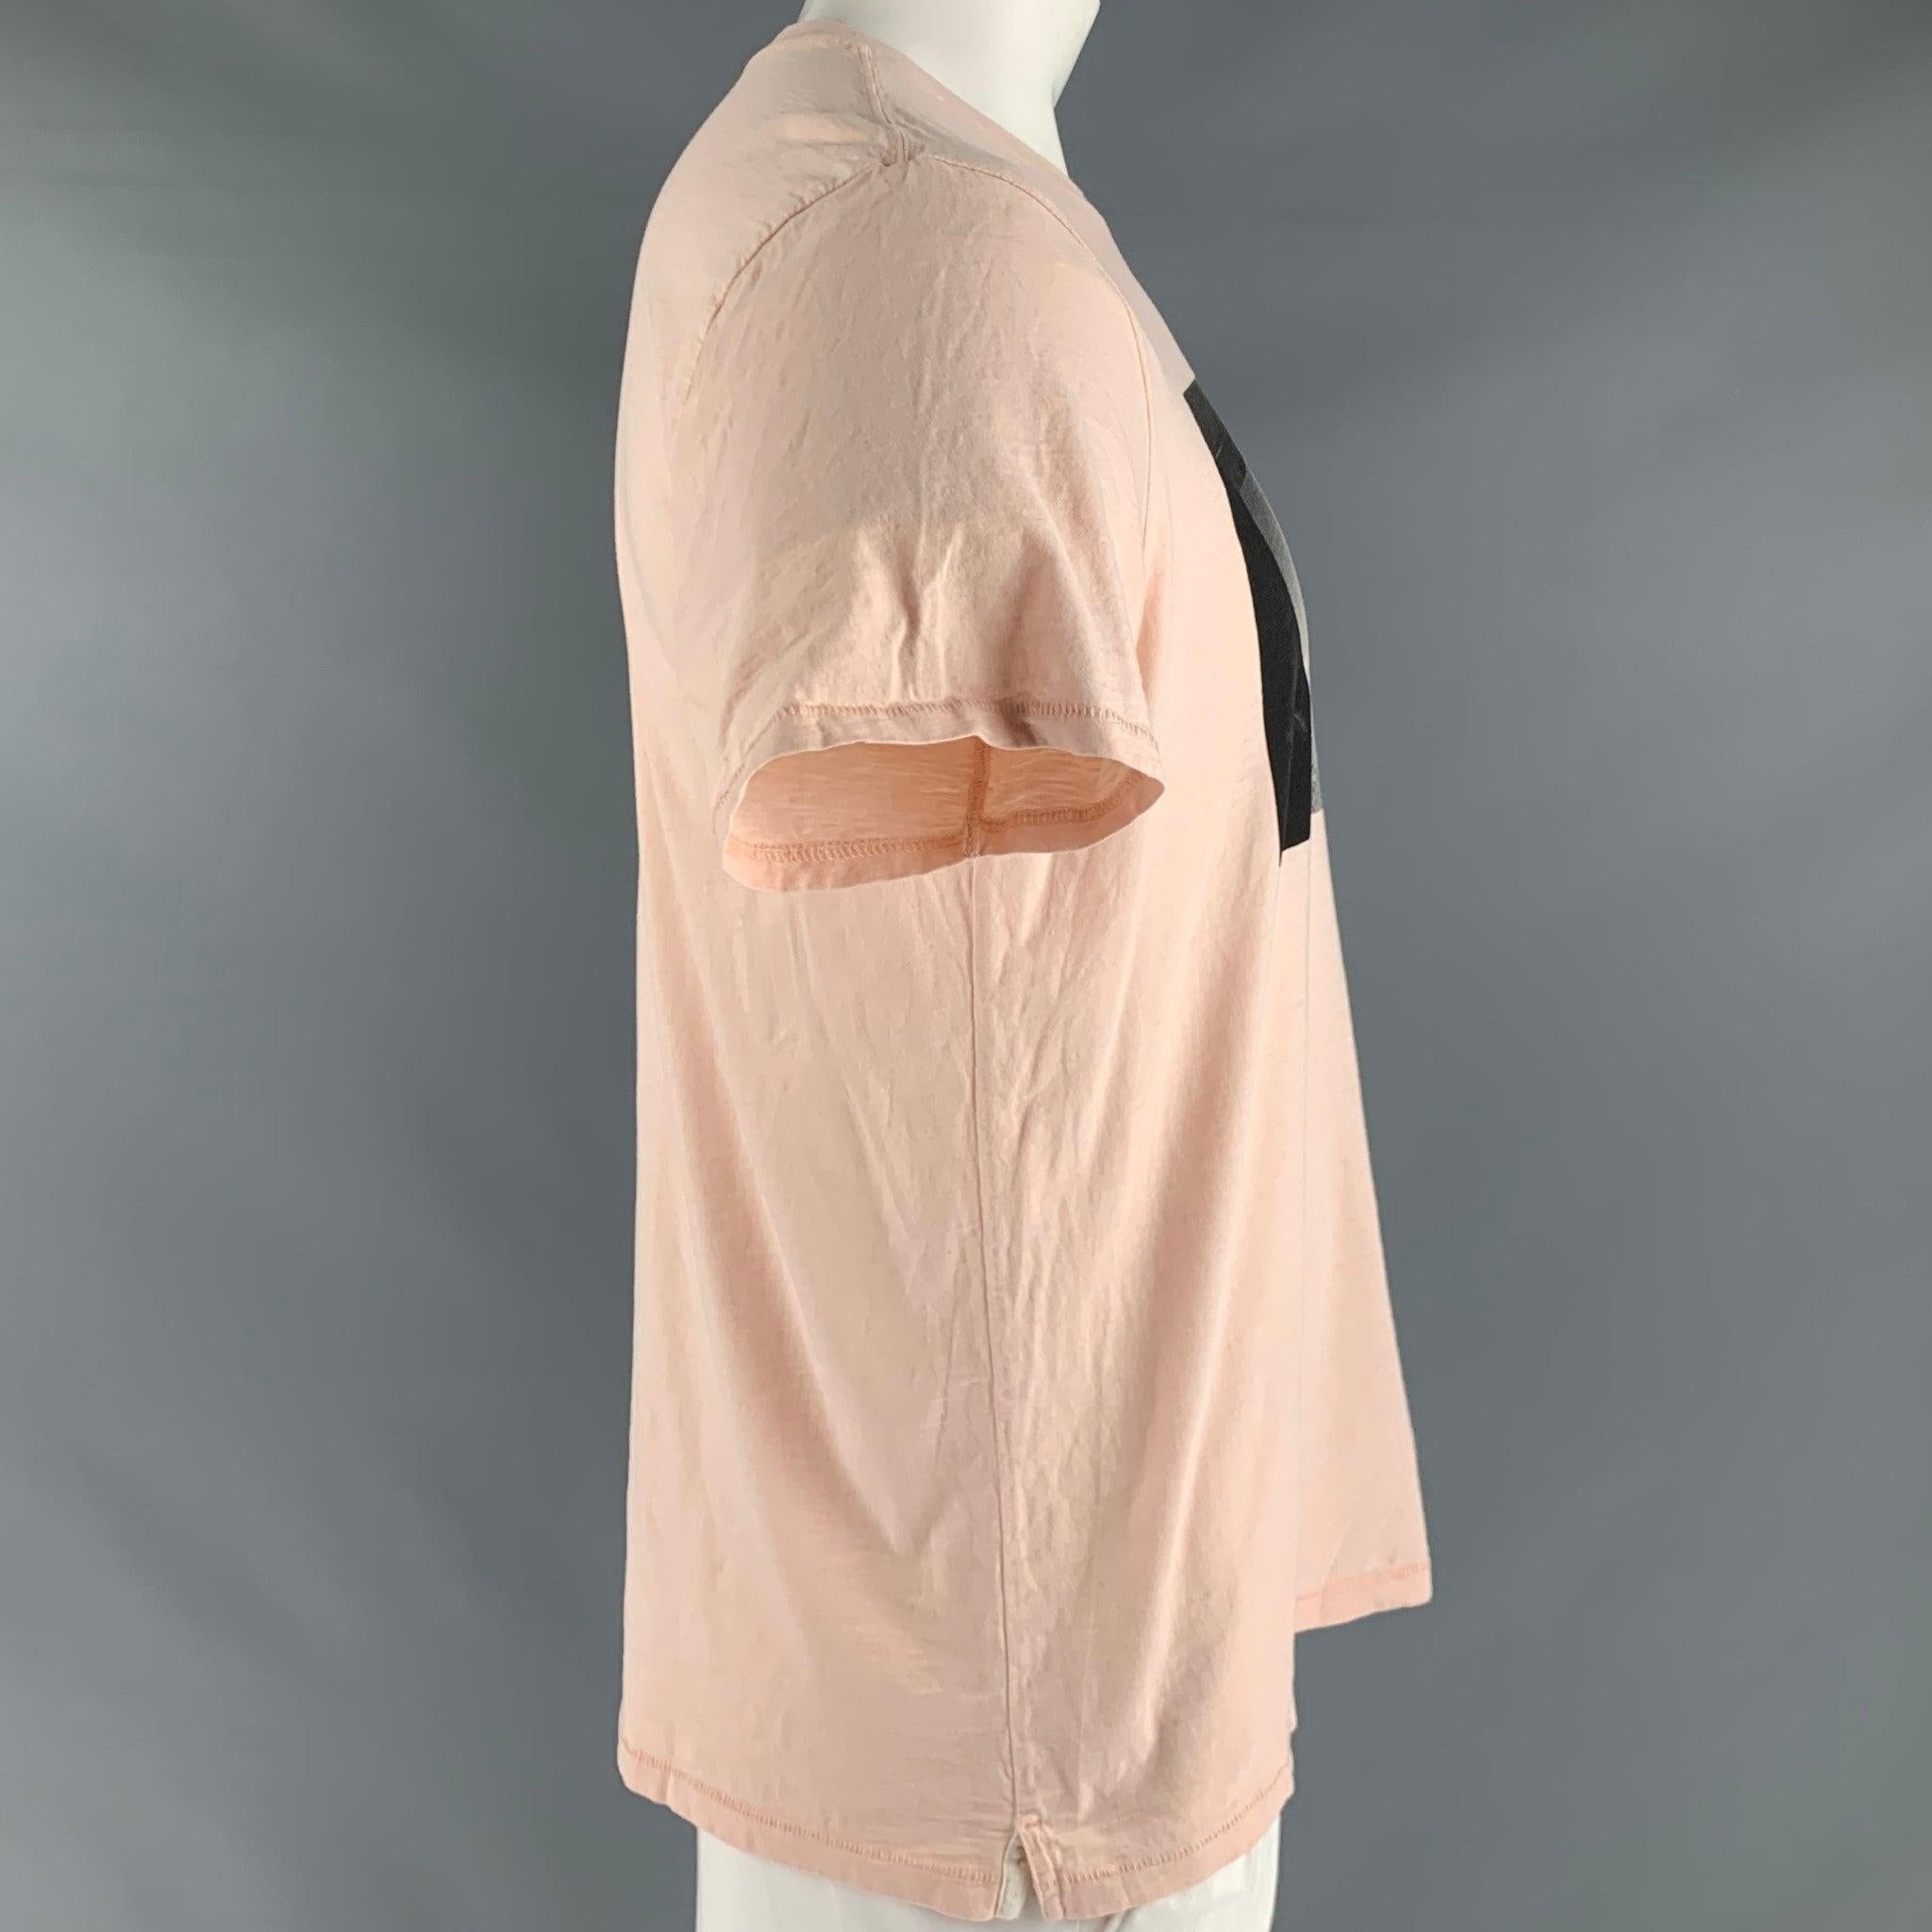 T-shirt RAG & BONE
dans un
Tissu en coton rose avec graphique monochrome, manches courtes et col ras du cou.Très bon état d'occasion. Signes mineurs d'usure. 

Marqué :   L/G. 

Mesures : 
 
Épaule : 19 pouces  Poitrine : 44 pouces  Manche : 8.5